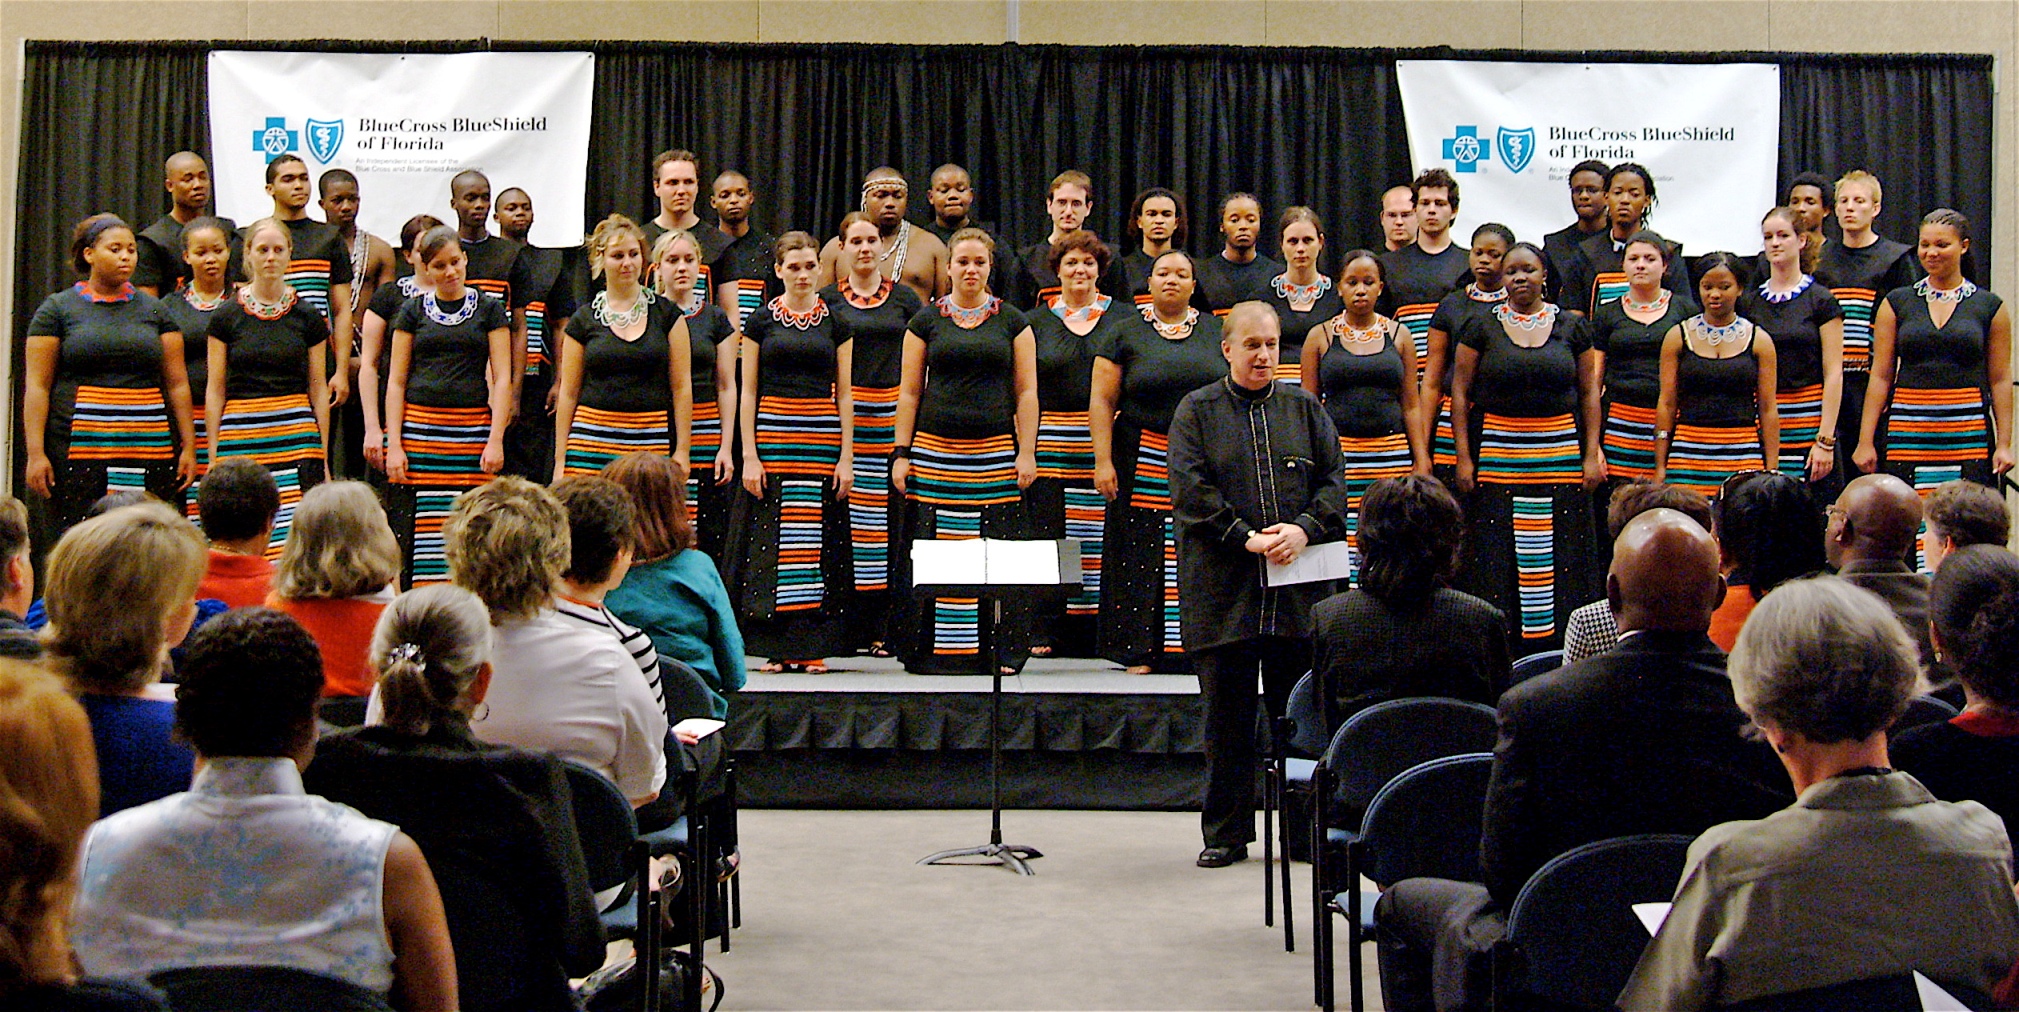 Choir with Horizons composer Peter Loius van-Dijk in Jacksonville